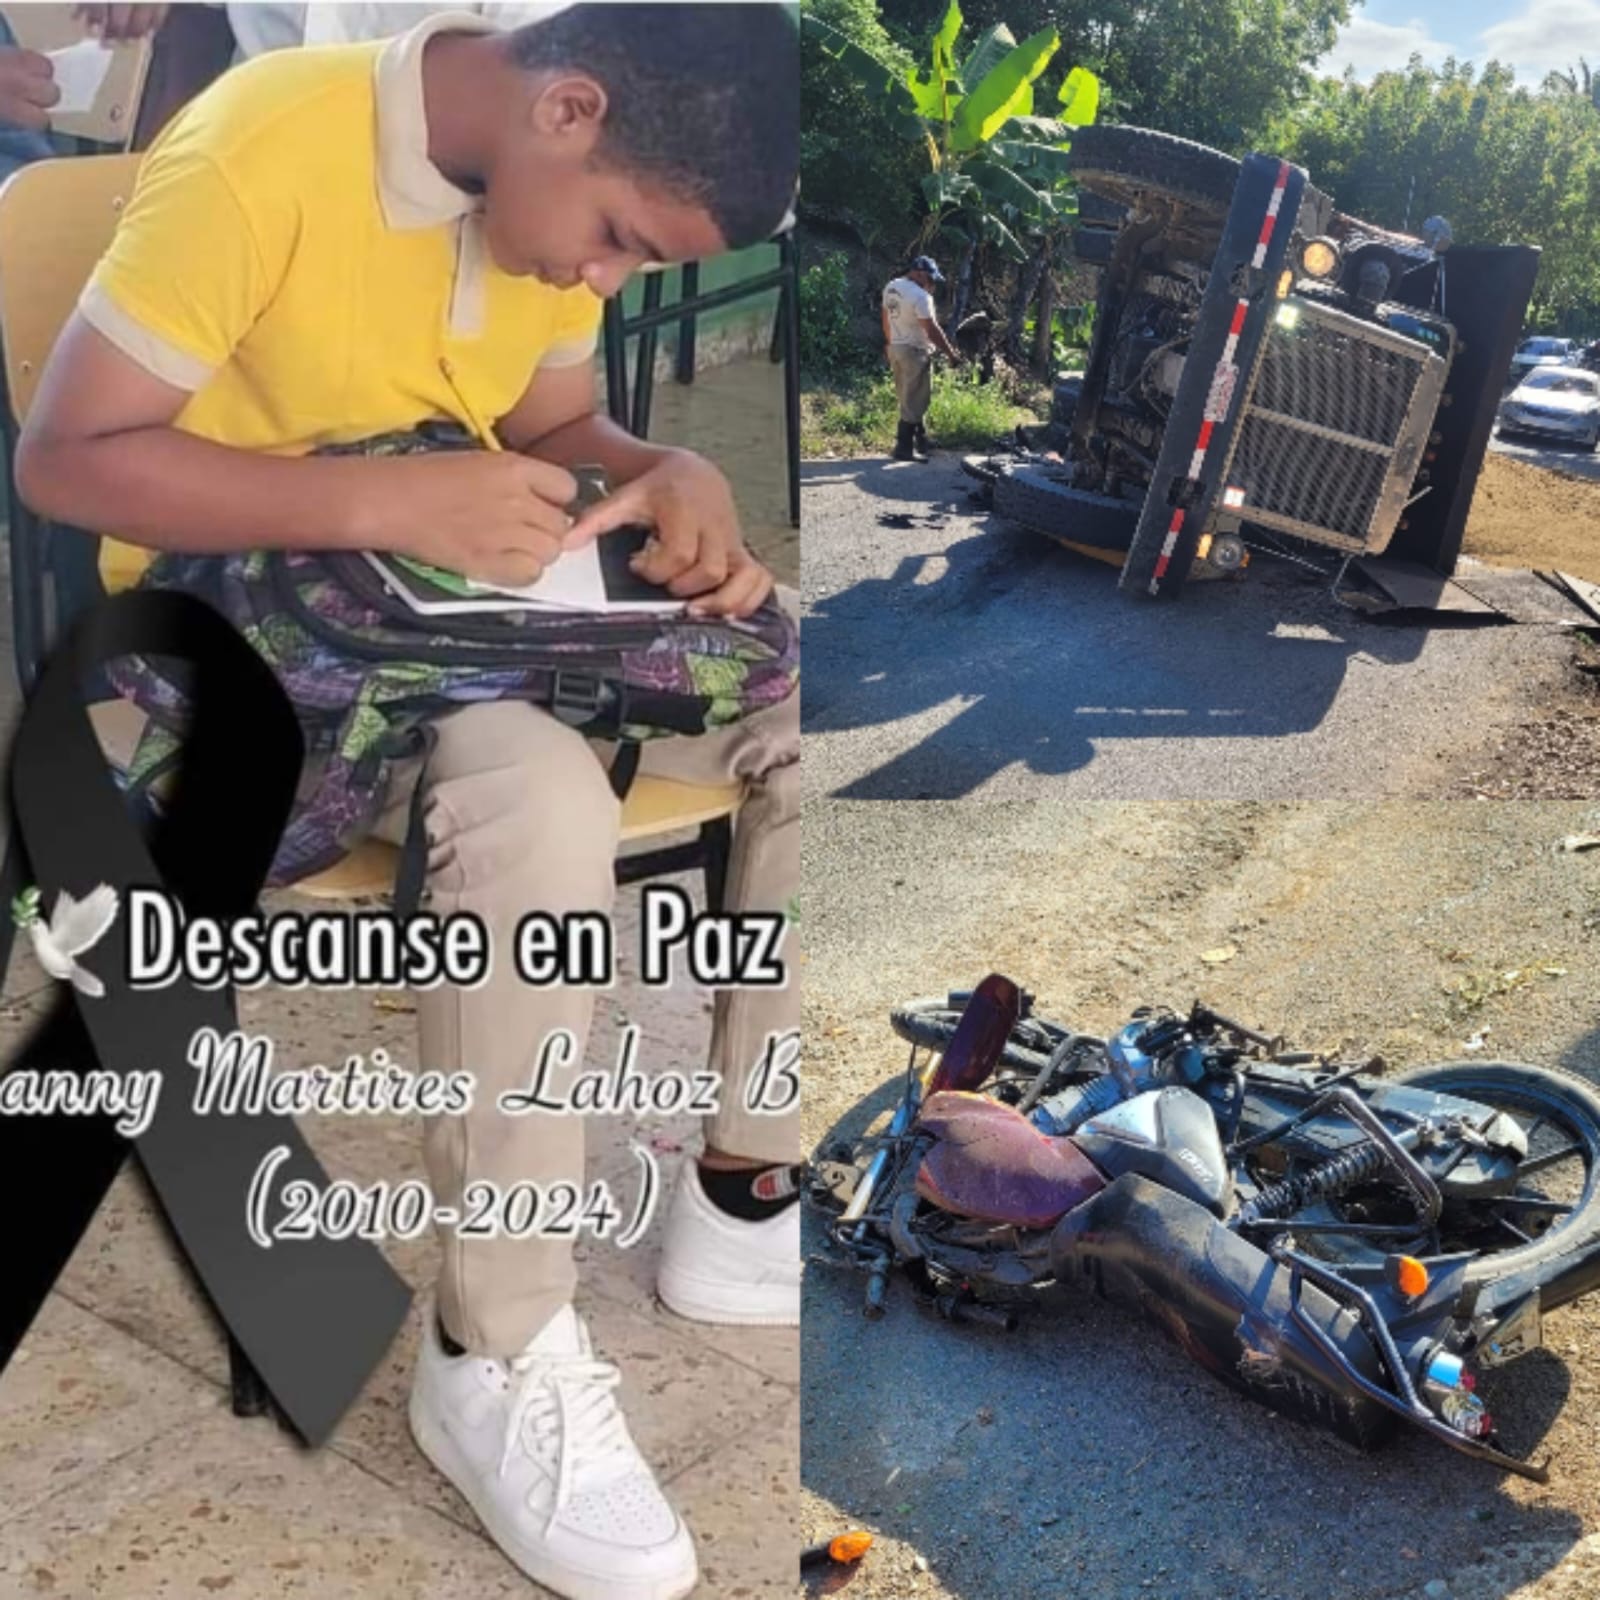    ¡Trágica! Muere adolescente al chocar motocicleta que conducía con un camión en Luperón   